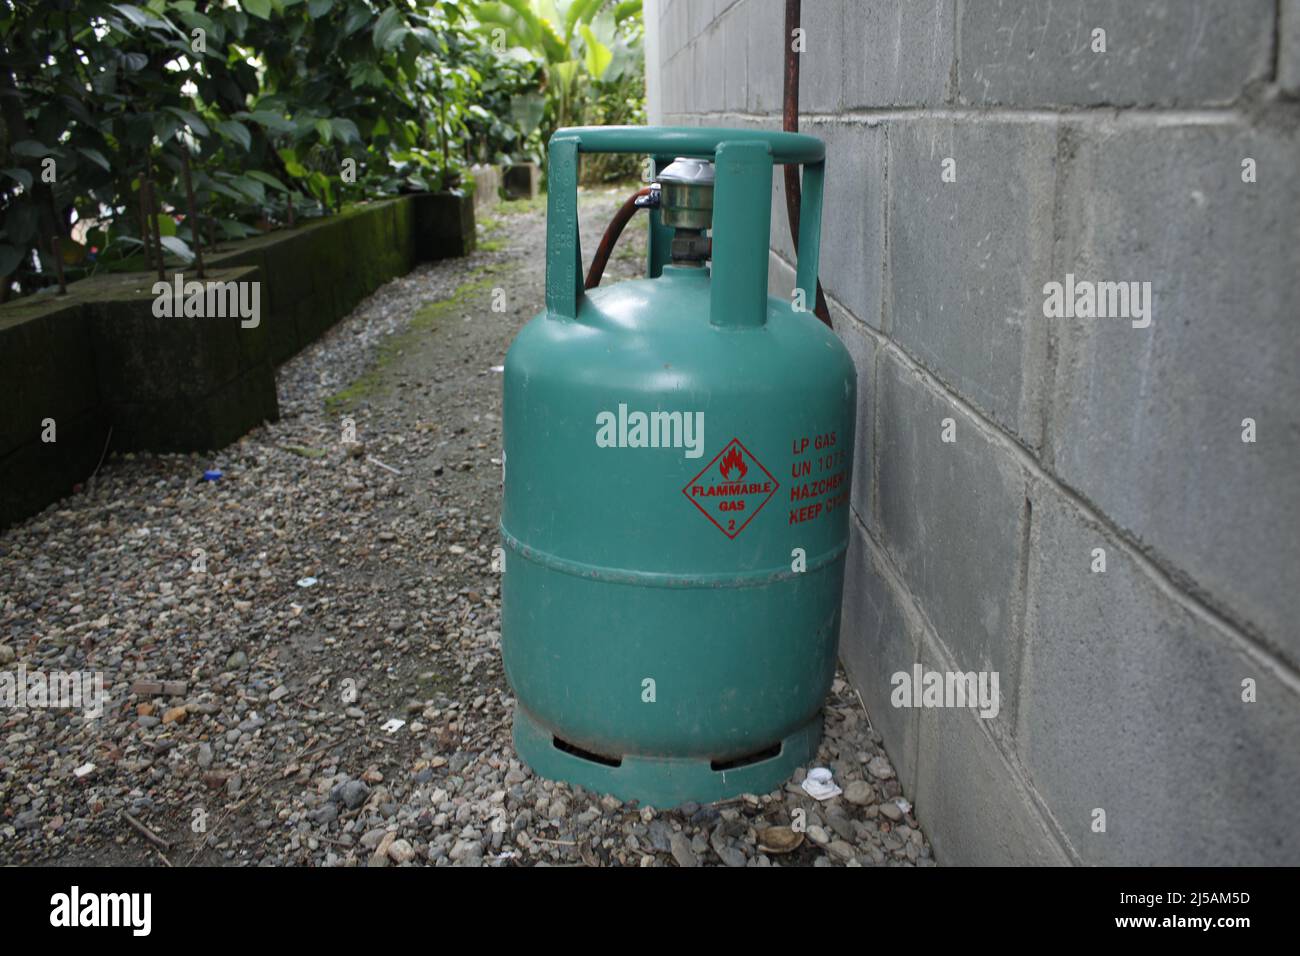 Una bombola di gas LP da 13 KG utilizzata per la cottura a Port Moresby, Papua Nuova Guinea. Foto Stock